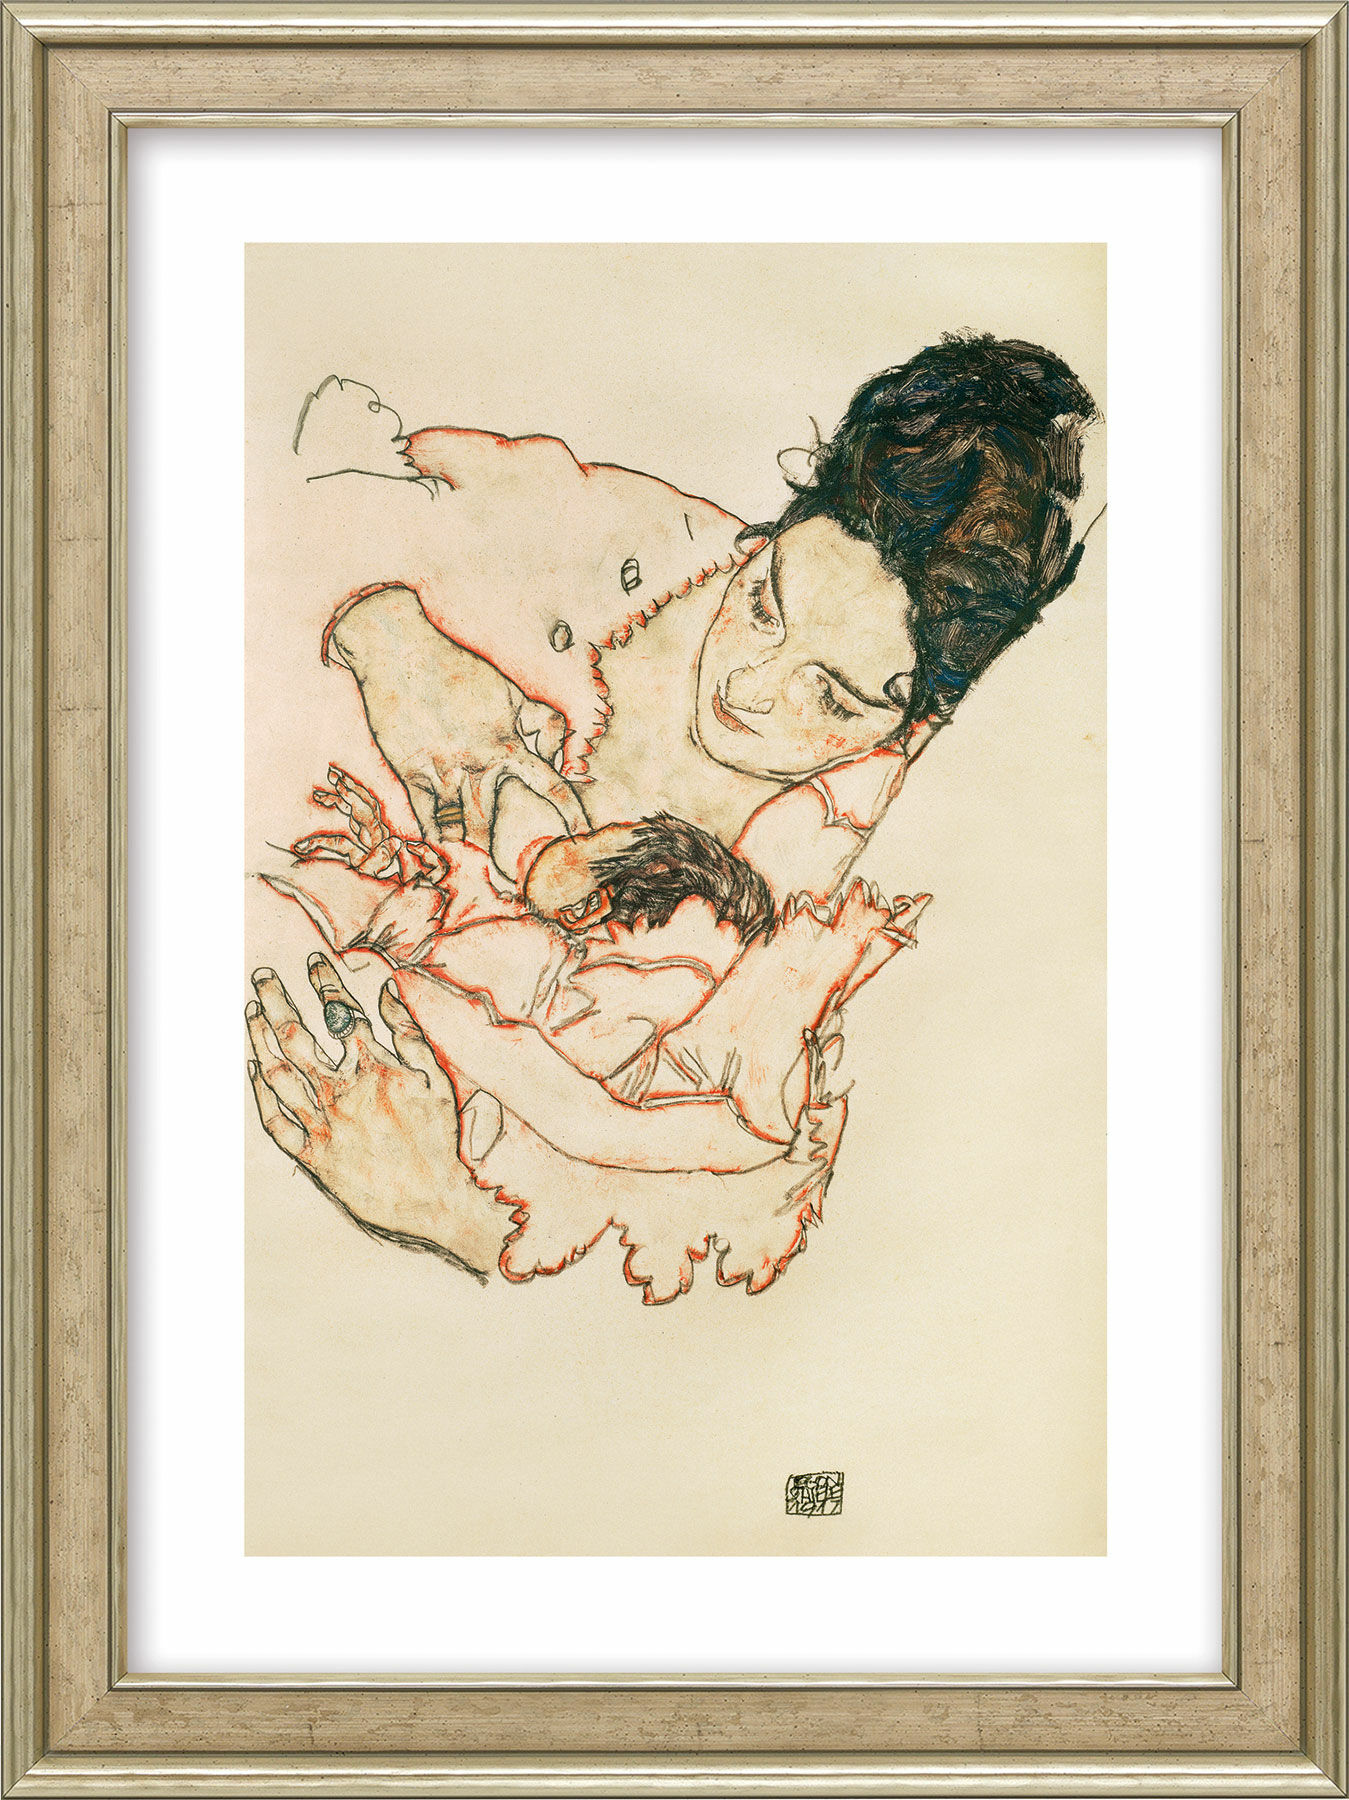 Billede "Plejemor (Stephanie Grunewald)" (1917), indrammet von Egon Schiele